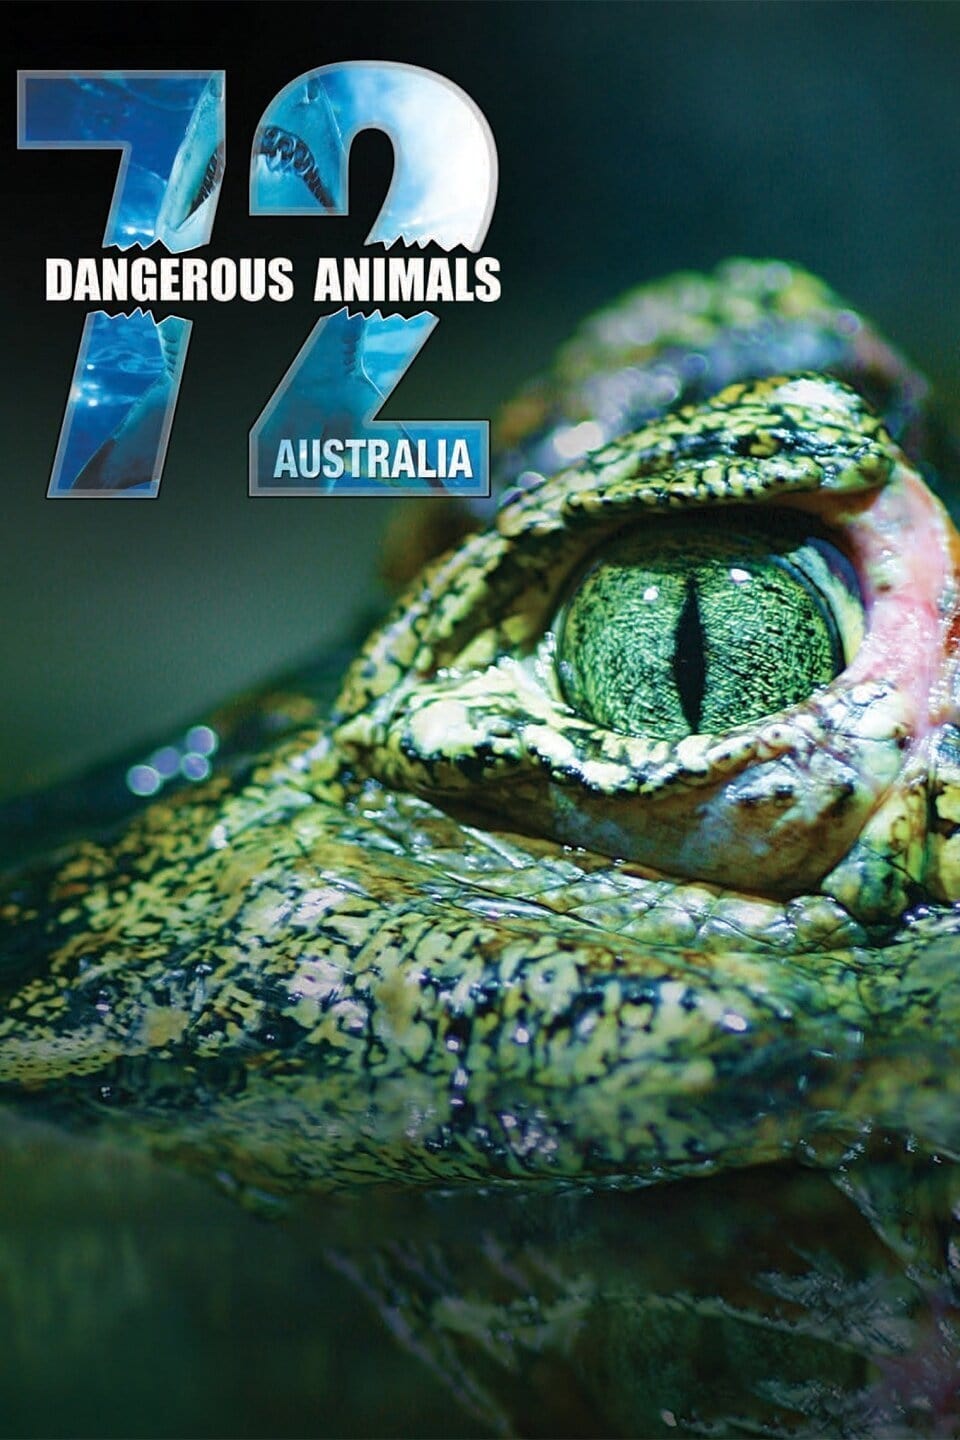 72 Dangerous Animals: Australia TV Shows About Dangerous